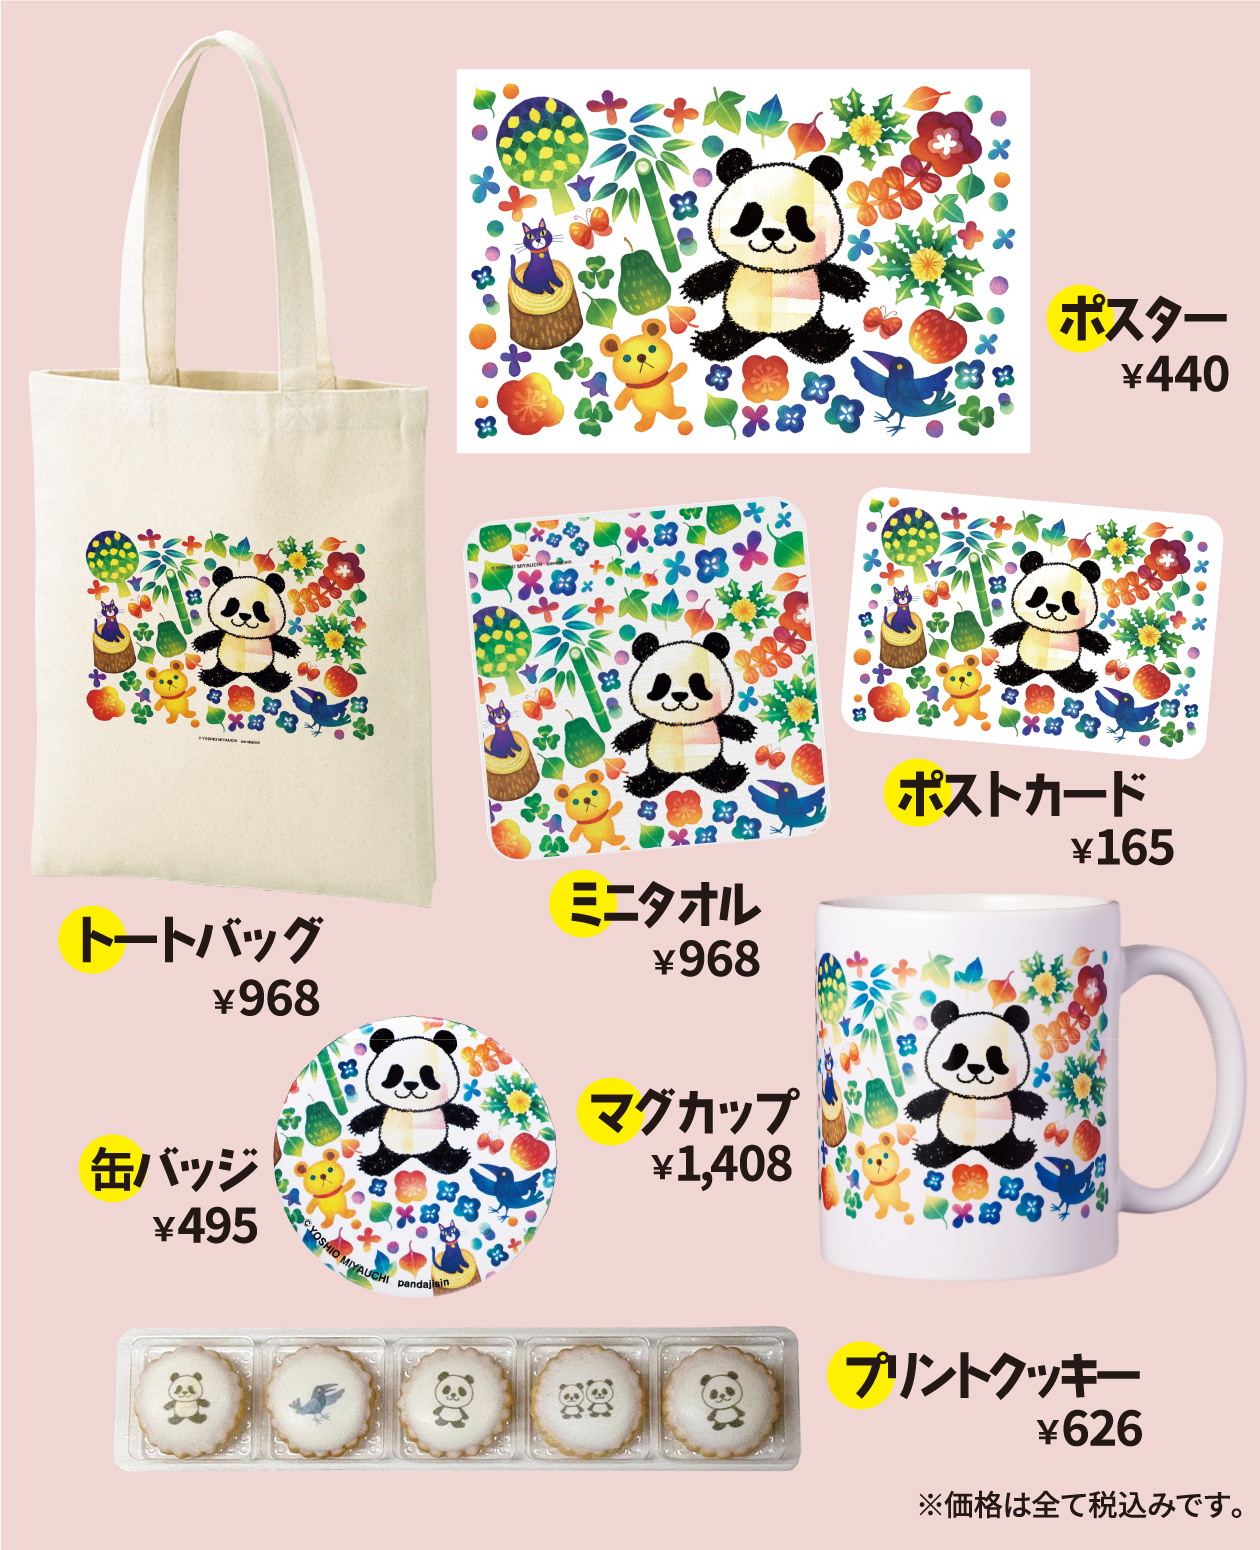 panda-jishin-3rd-items